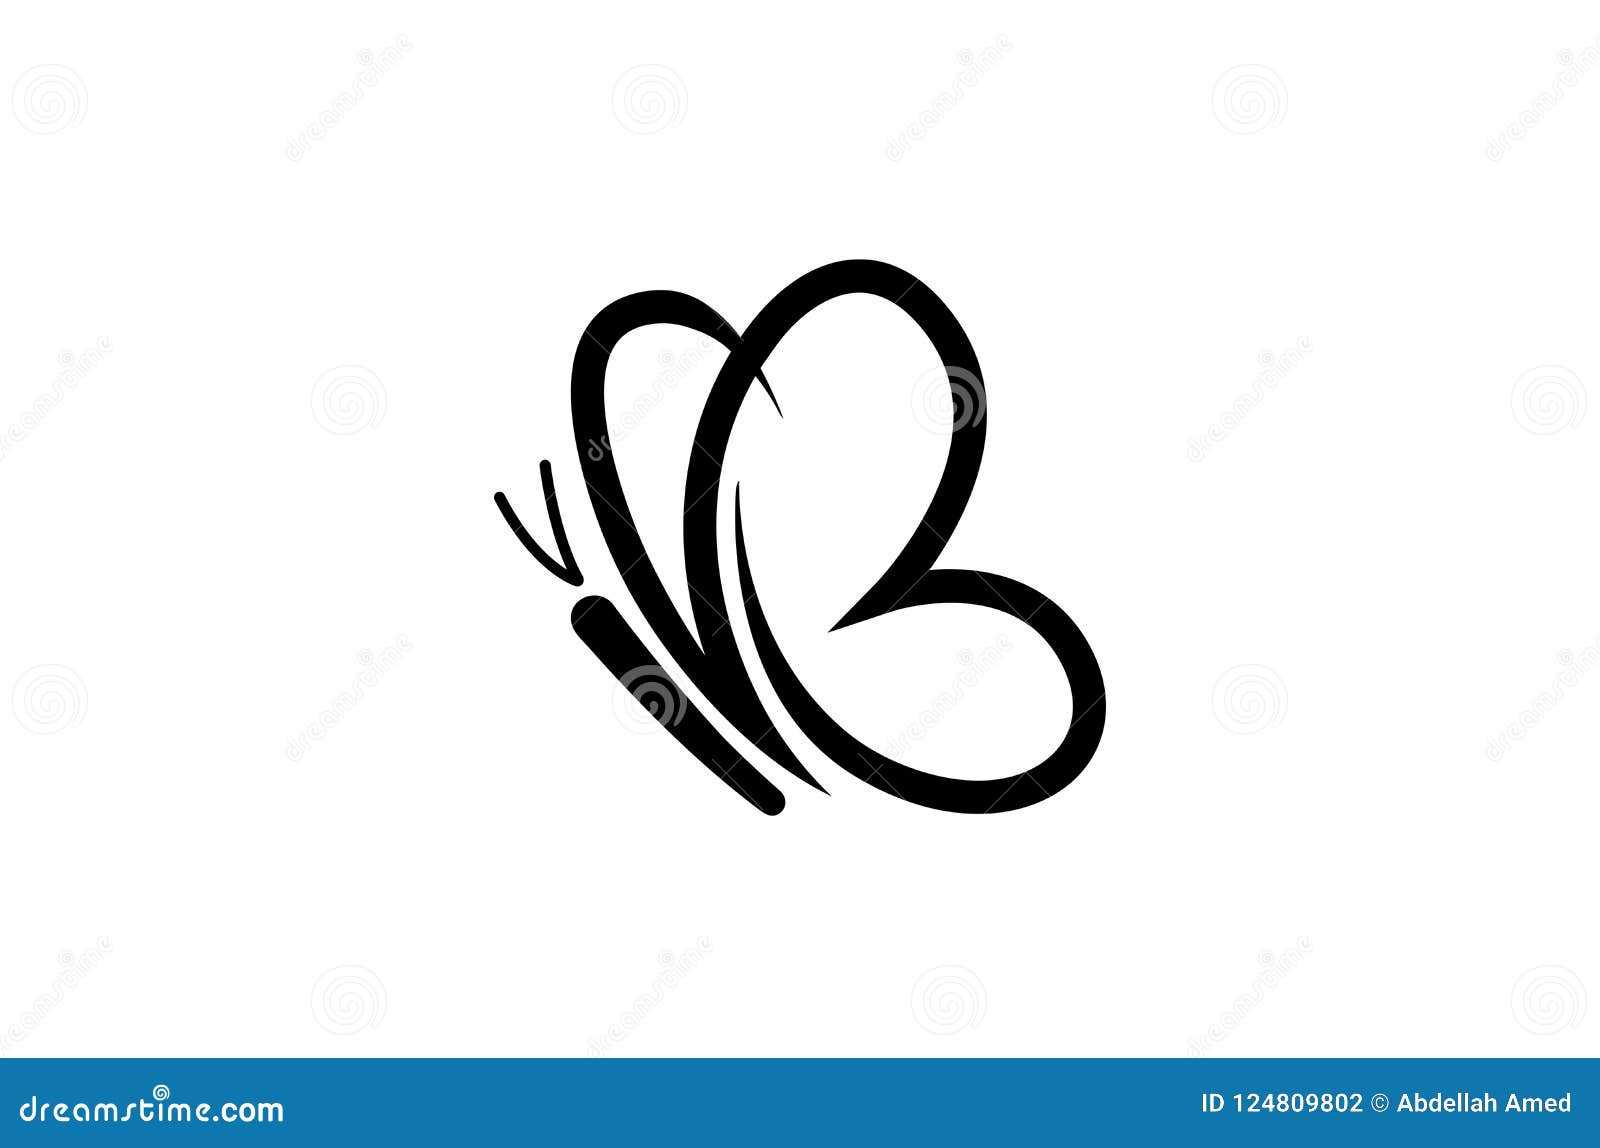 Butterfly Facing Wings Logo Template - Pixfiniti.gr